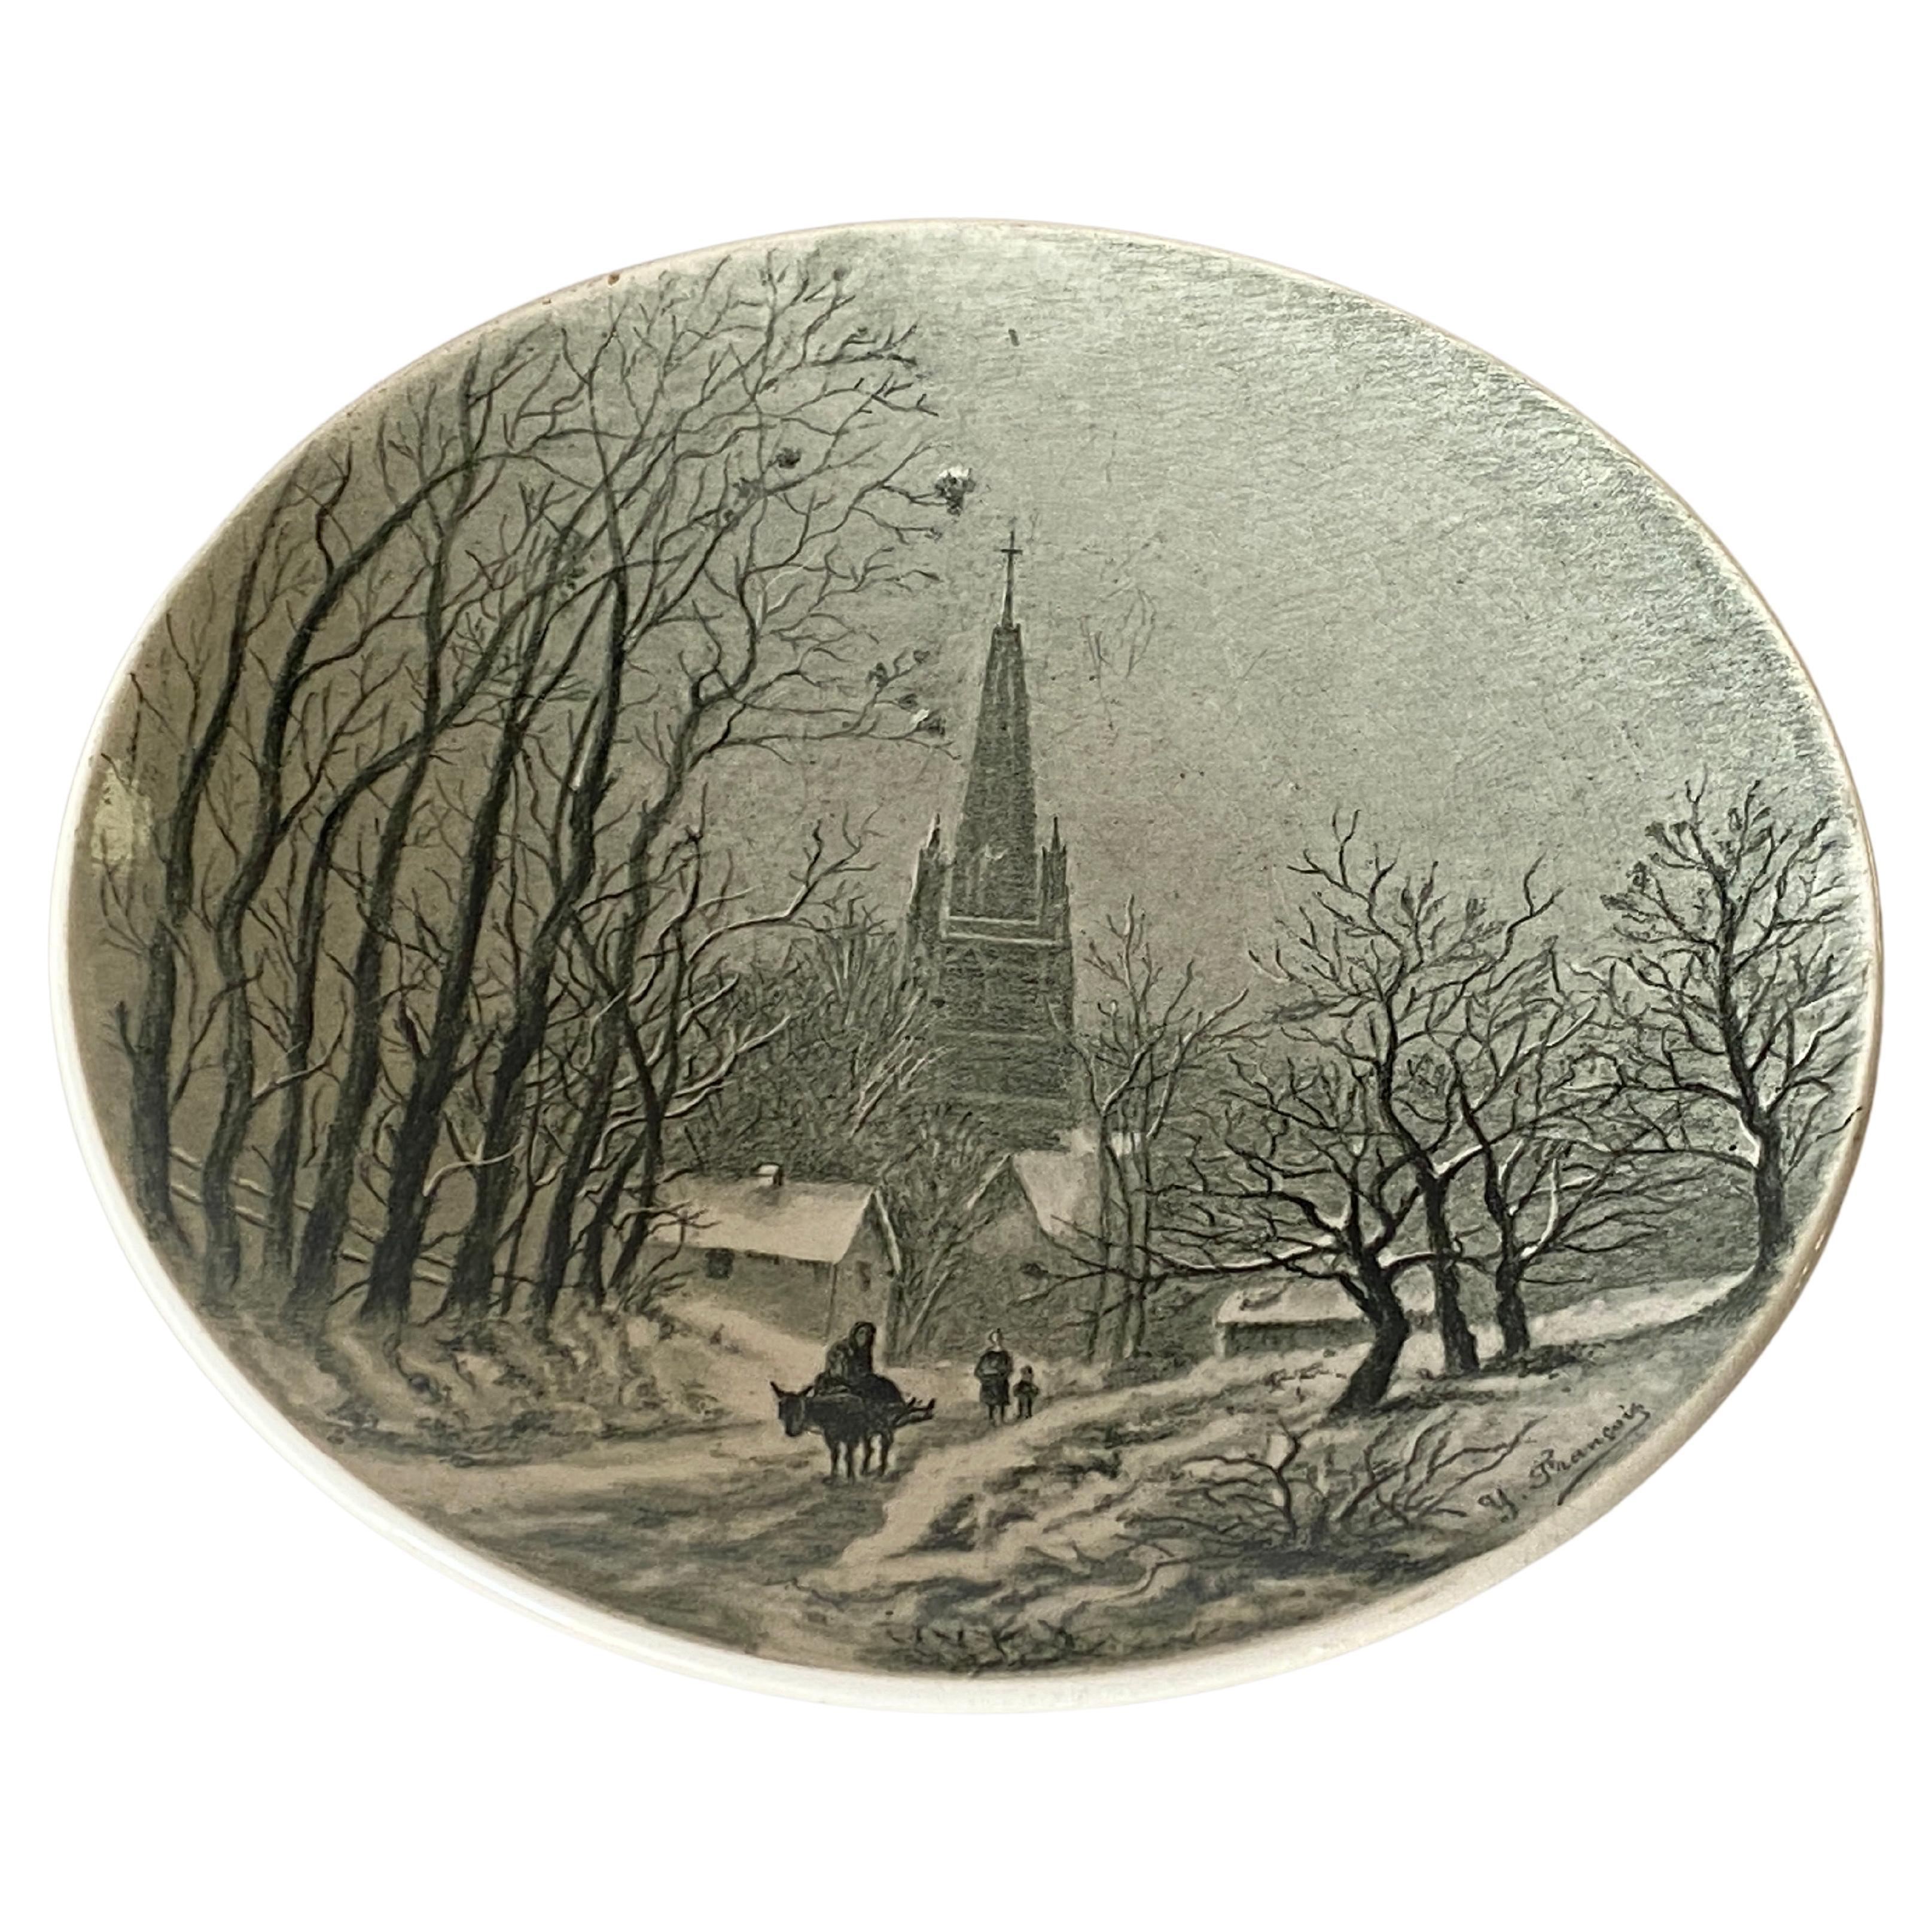 Paris Porcelain Plate, France 19th Century